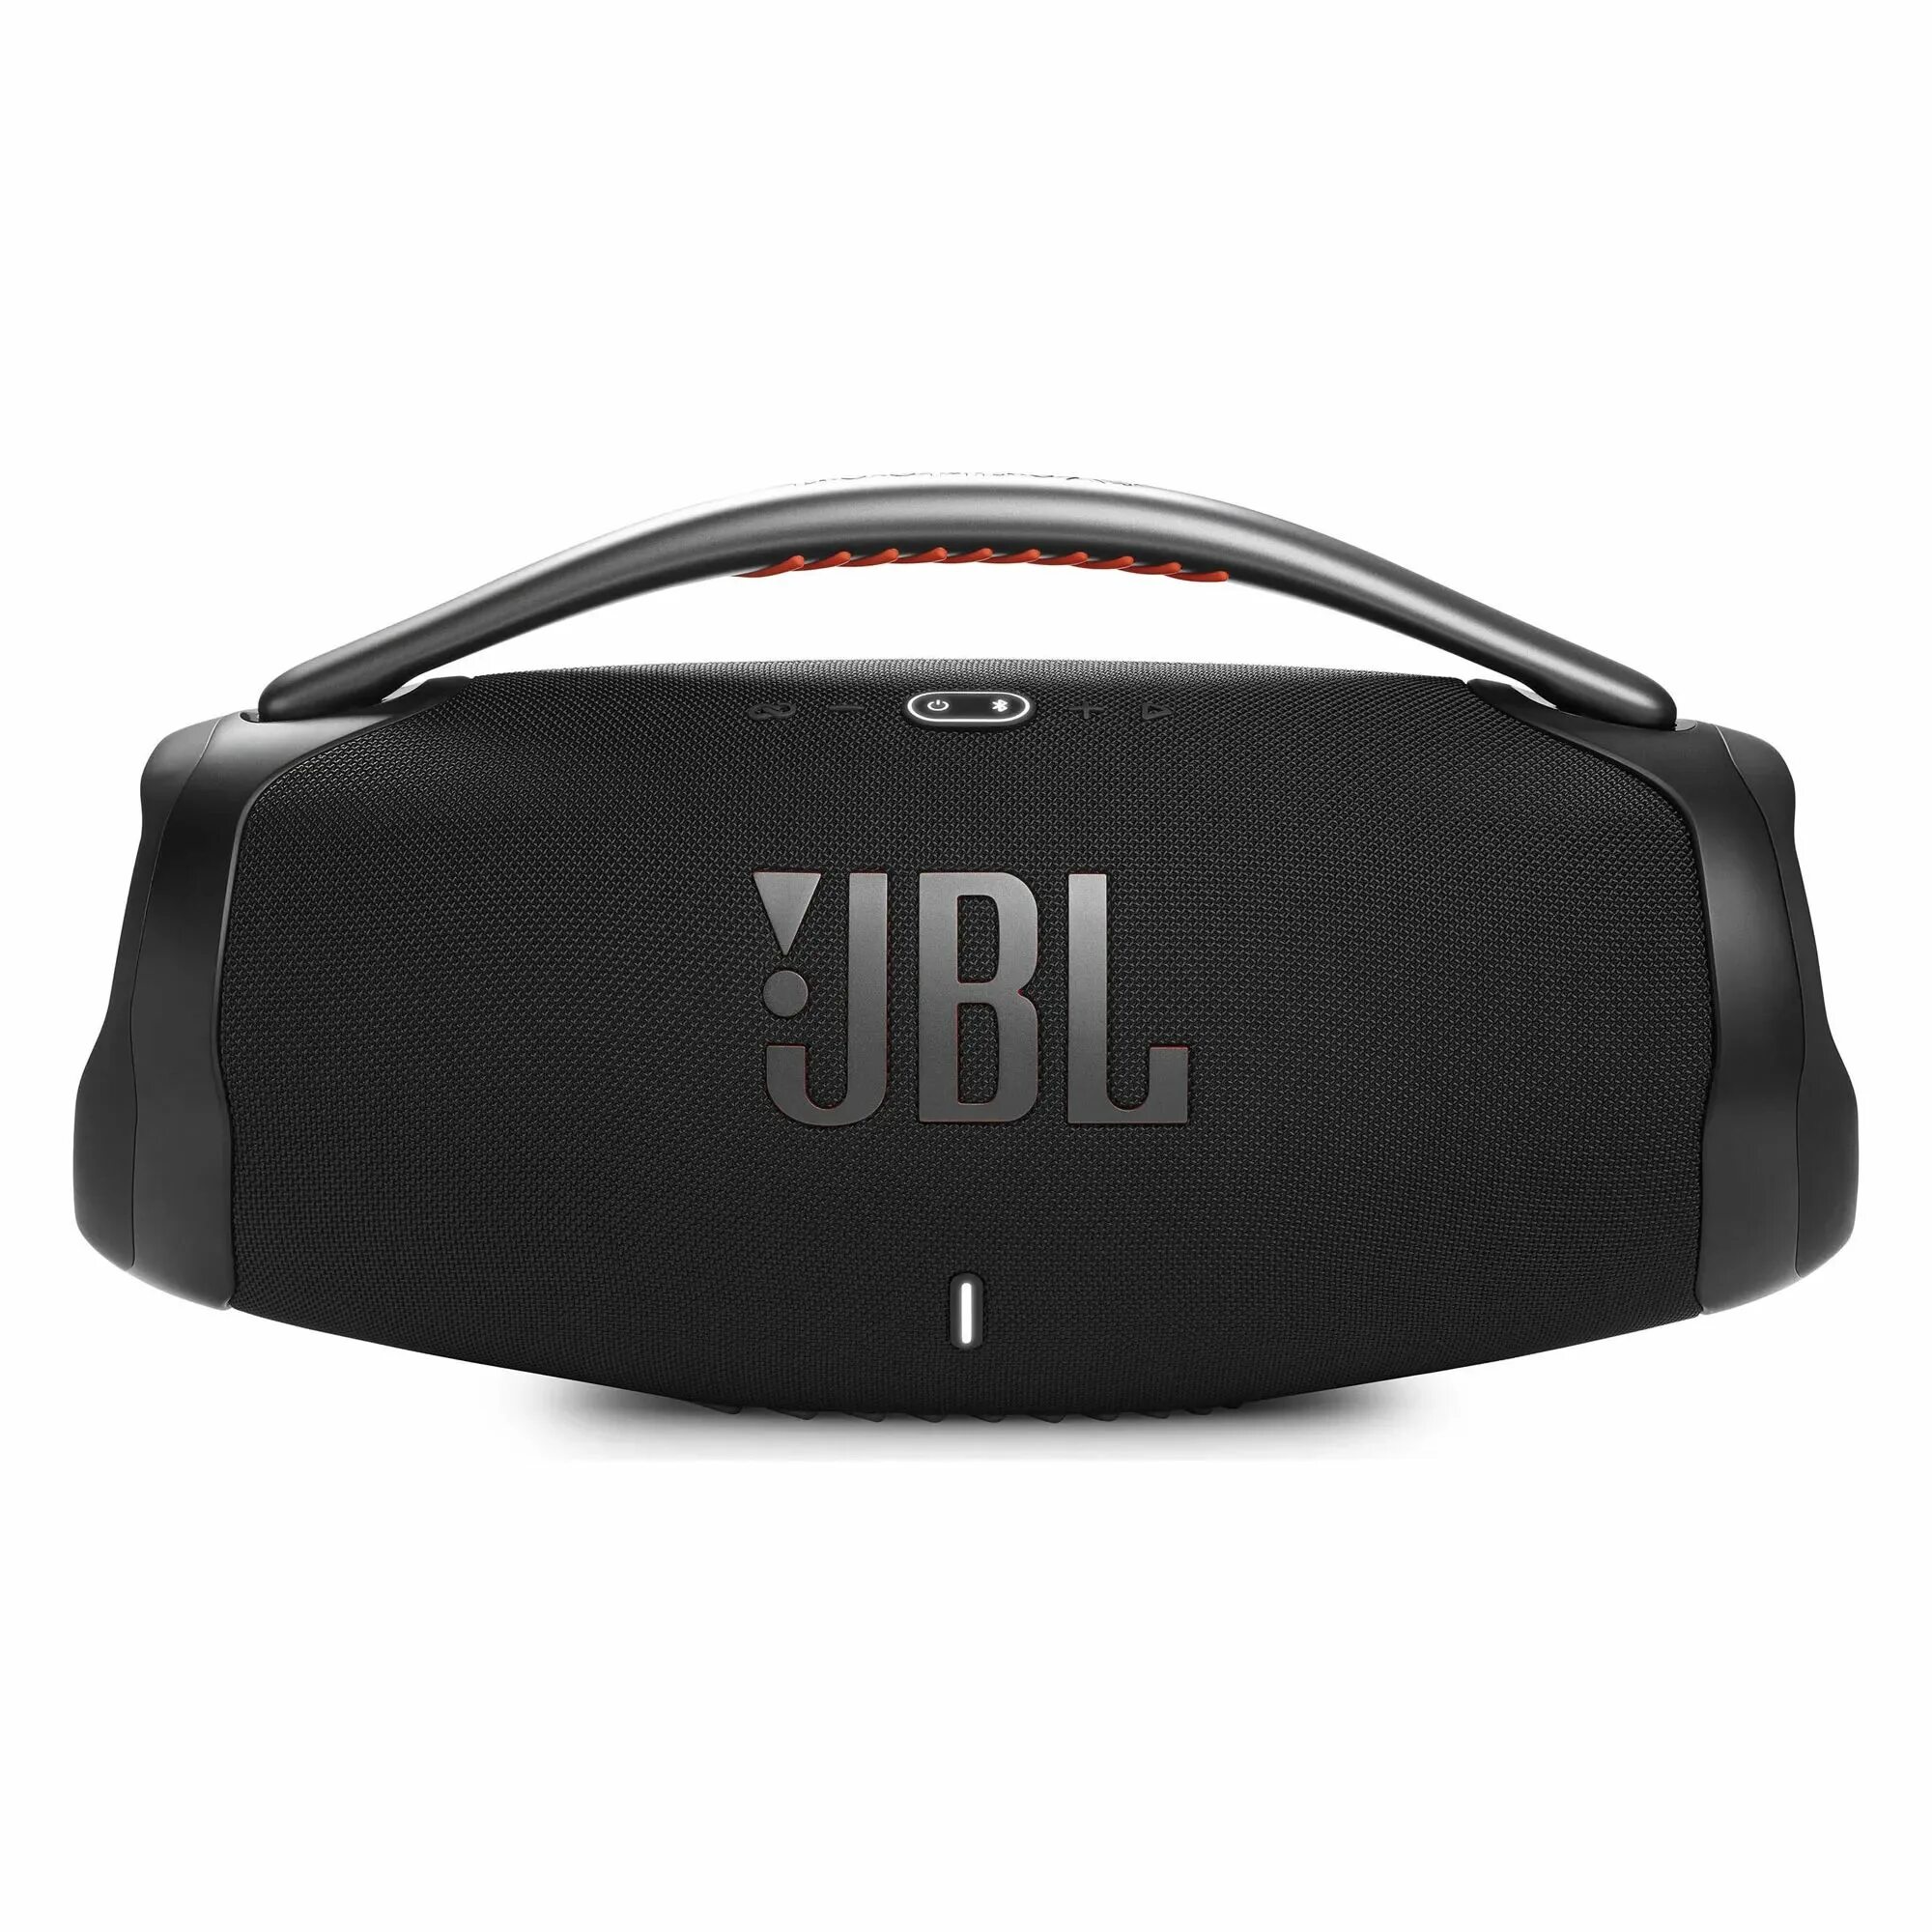 Бумбокс 3 JBL. JBL Boom Box 3. JBL Boombox 1. Портативная акустика JBL Boombox 3 Black. Jbl boombox 3 цены